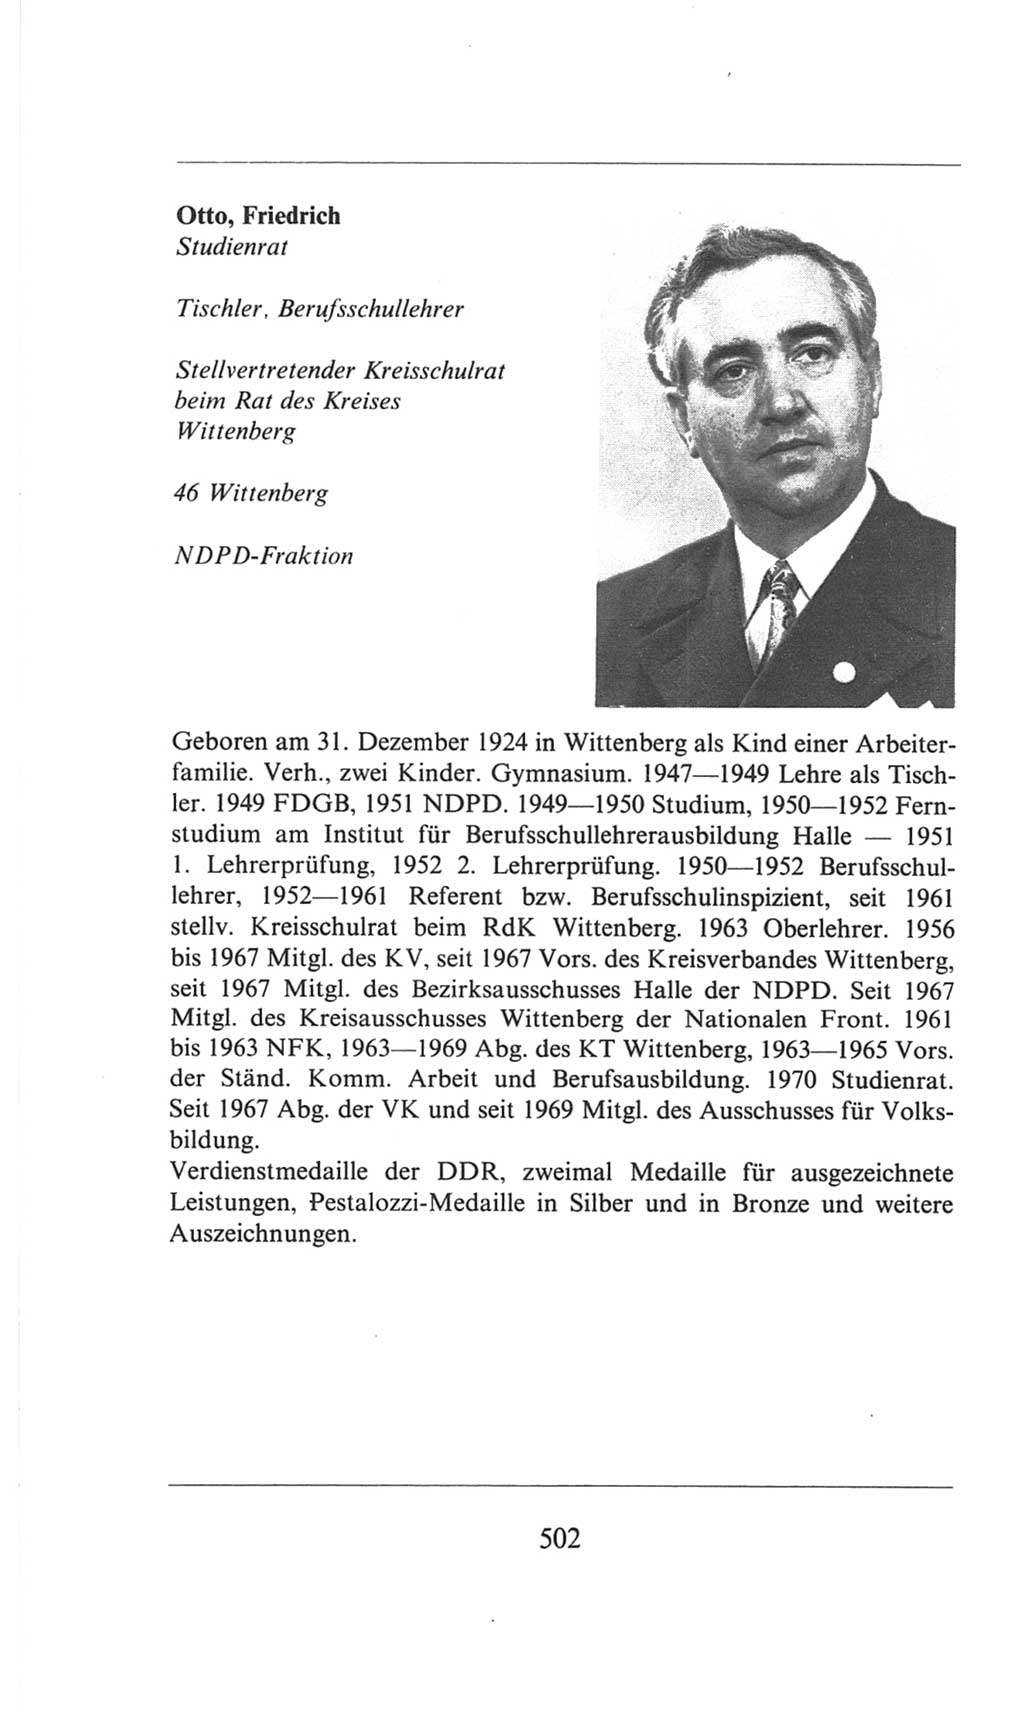 Volkskammer (VK) der Deutschen Demokratischen Republik (DDR), 6. Wahlperiode 1971-1976, Seite 502 (VK. DDR 6. WP. 1971-1976, S. 502)